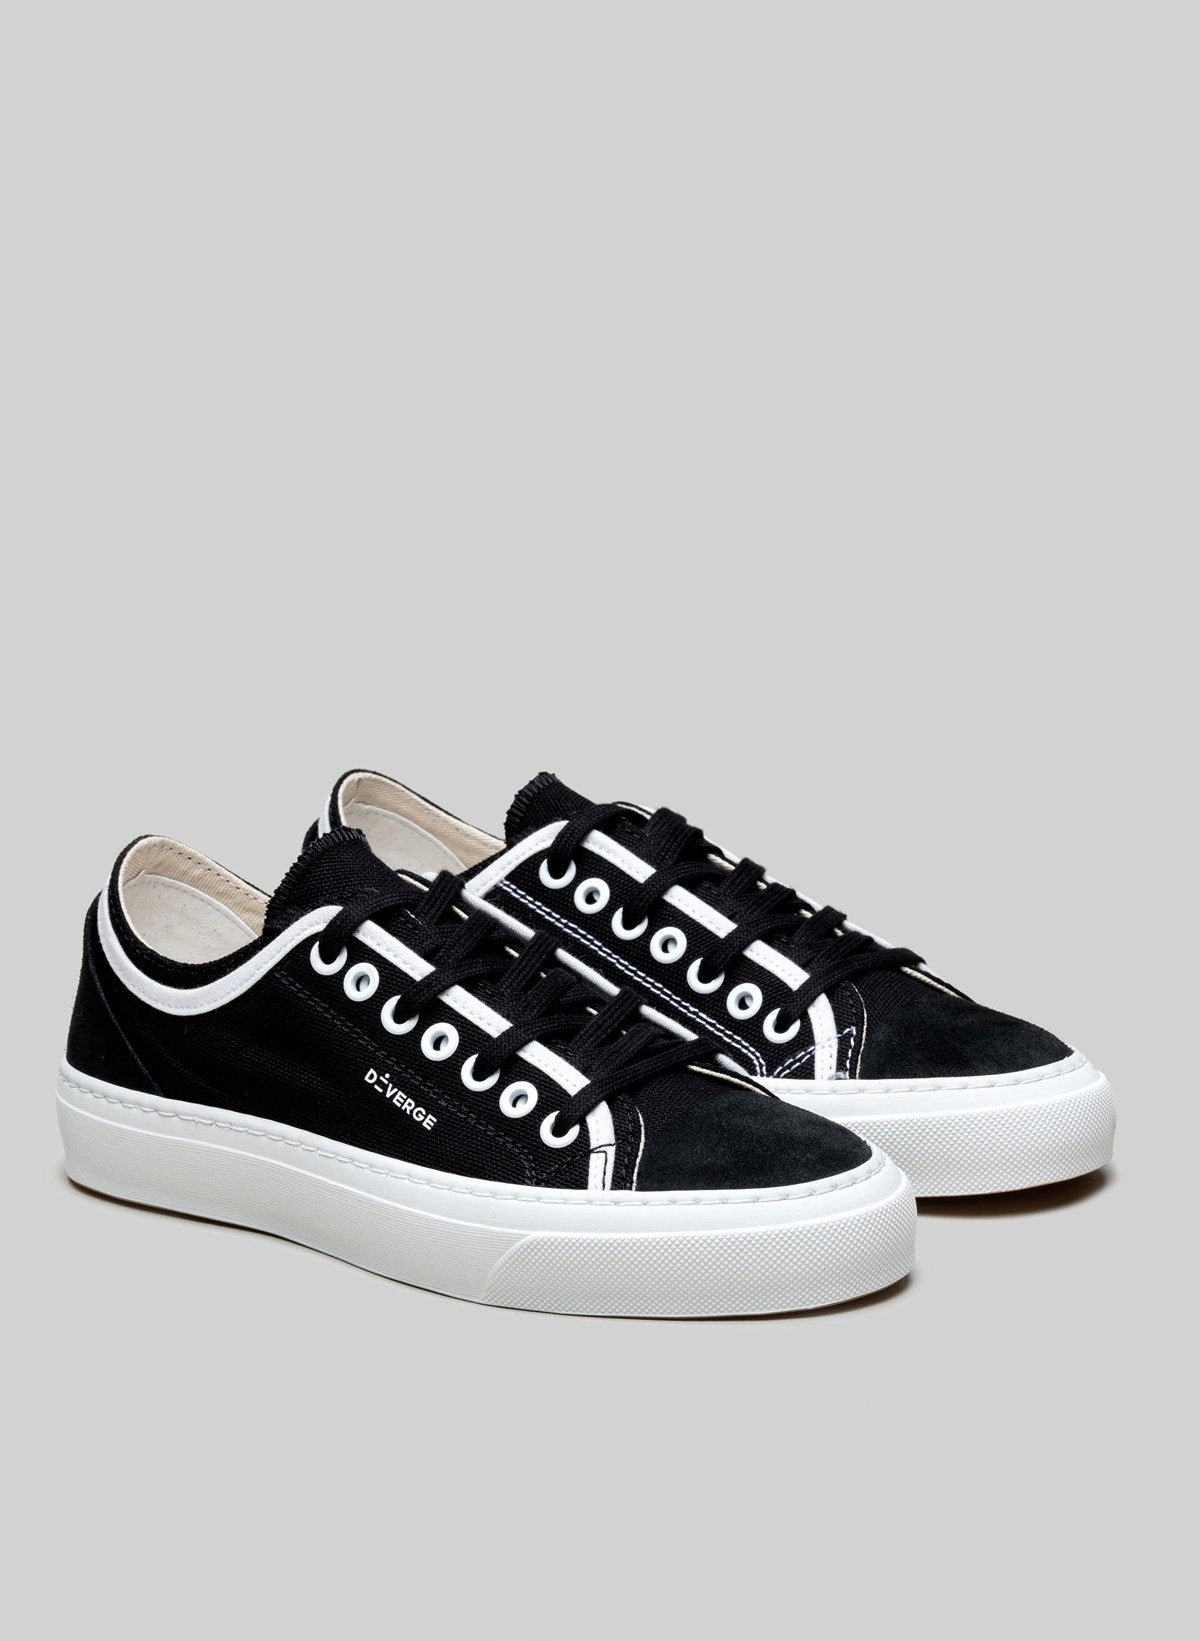 Low top blanco y negro sneakers de Diverge, promoviendo el impacto social y el calzado personalizado.